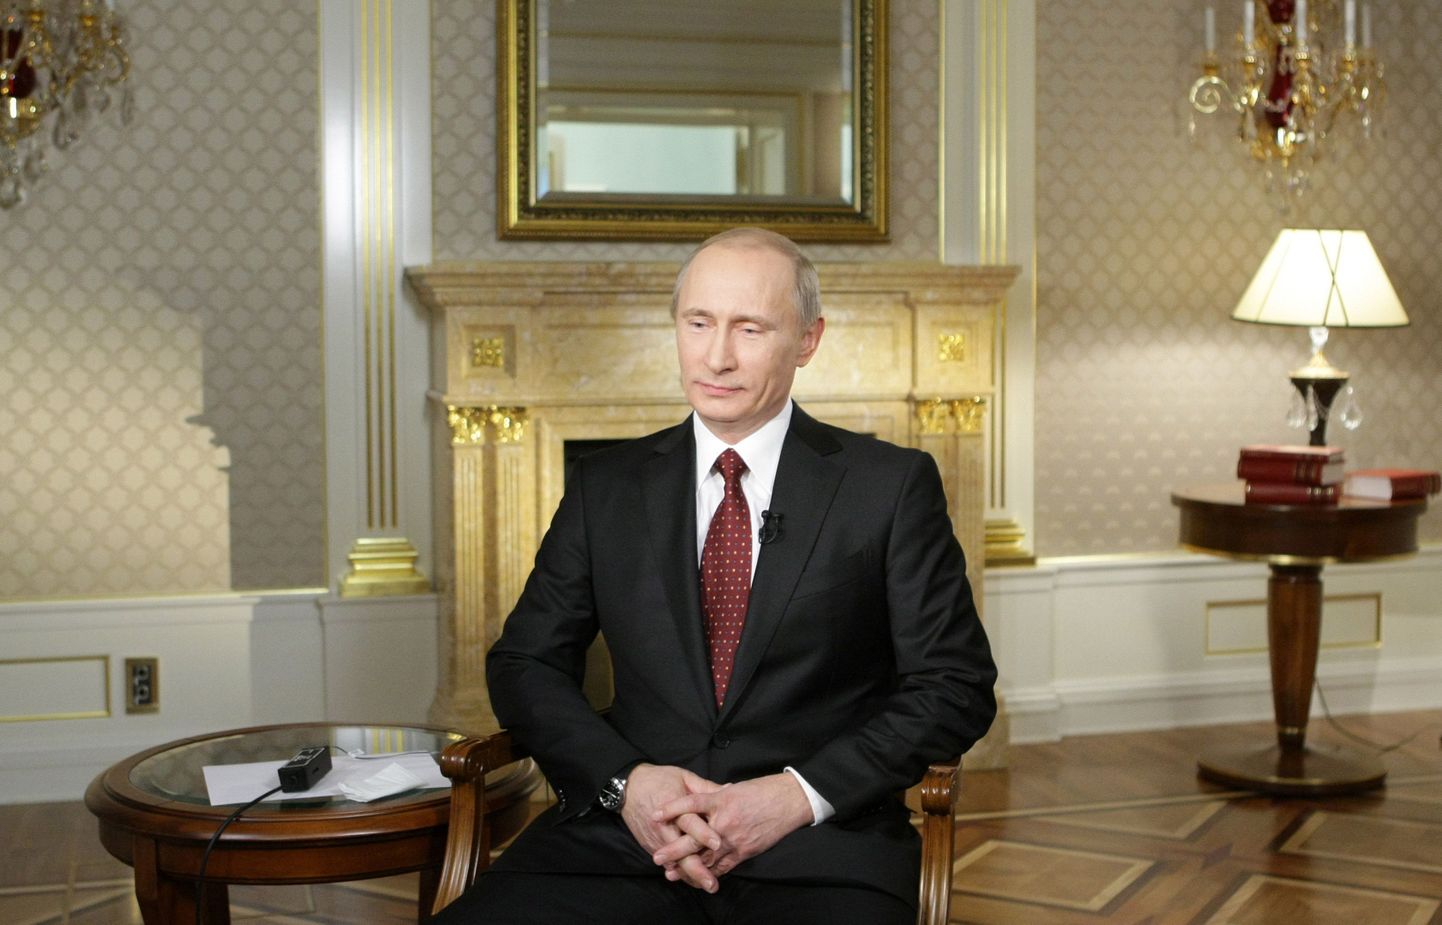 Vene peaminister Vladimir Putin oli väidetavalt teadlik plaanist mõrvata endine spioon Aleksandr Litvinenko.